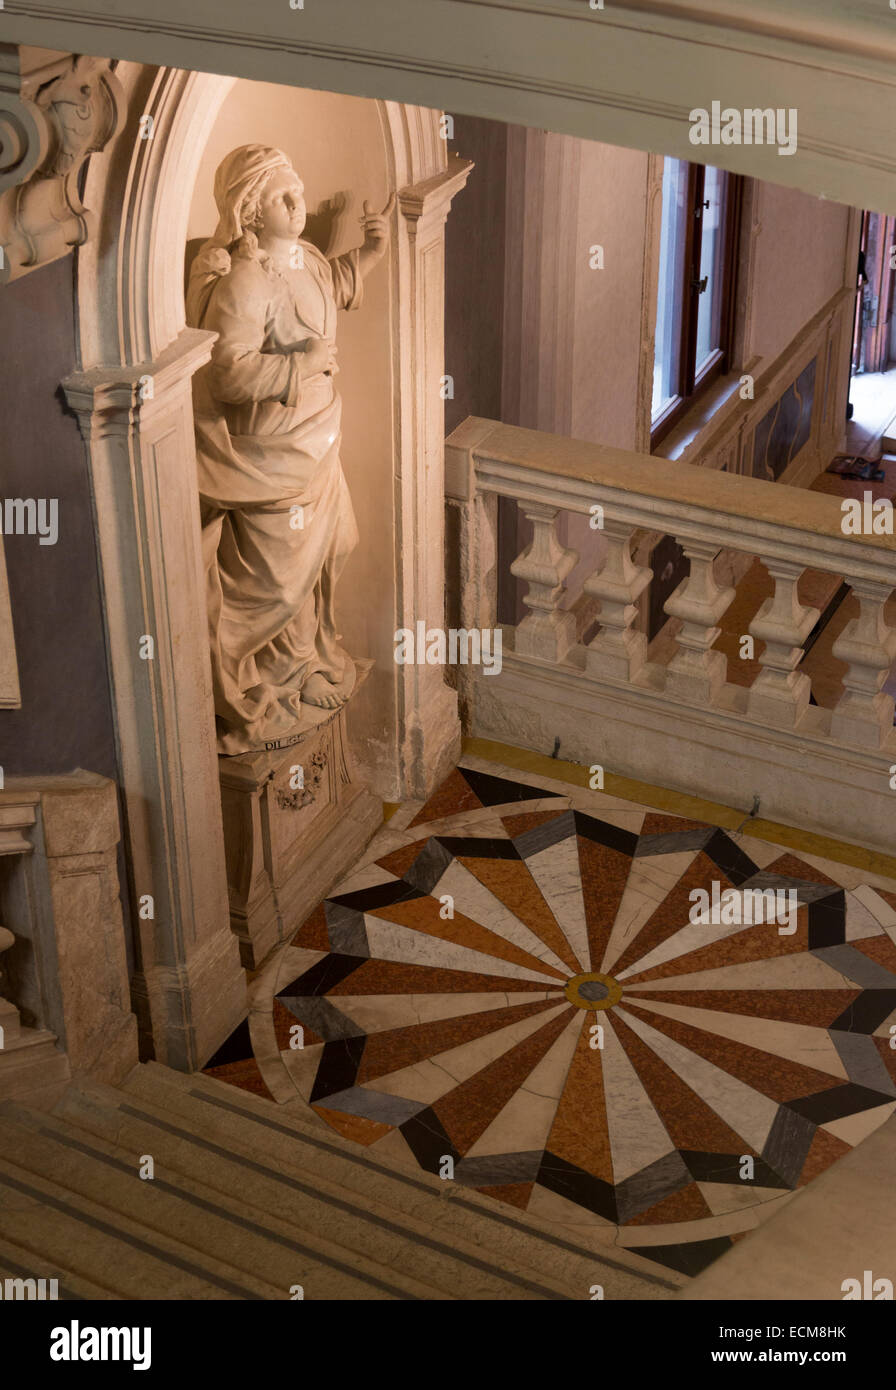 Escalier avec pavage de marbre et statue, Gallerie dell'Accademia, Venise, Italie Banque D'Images